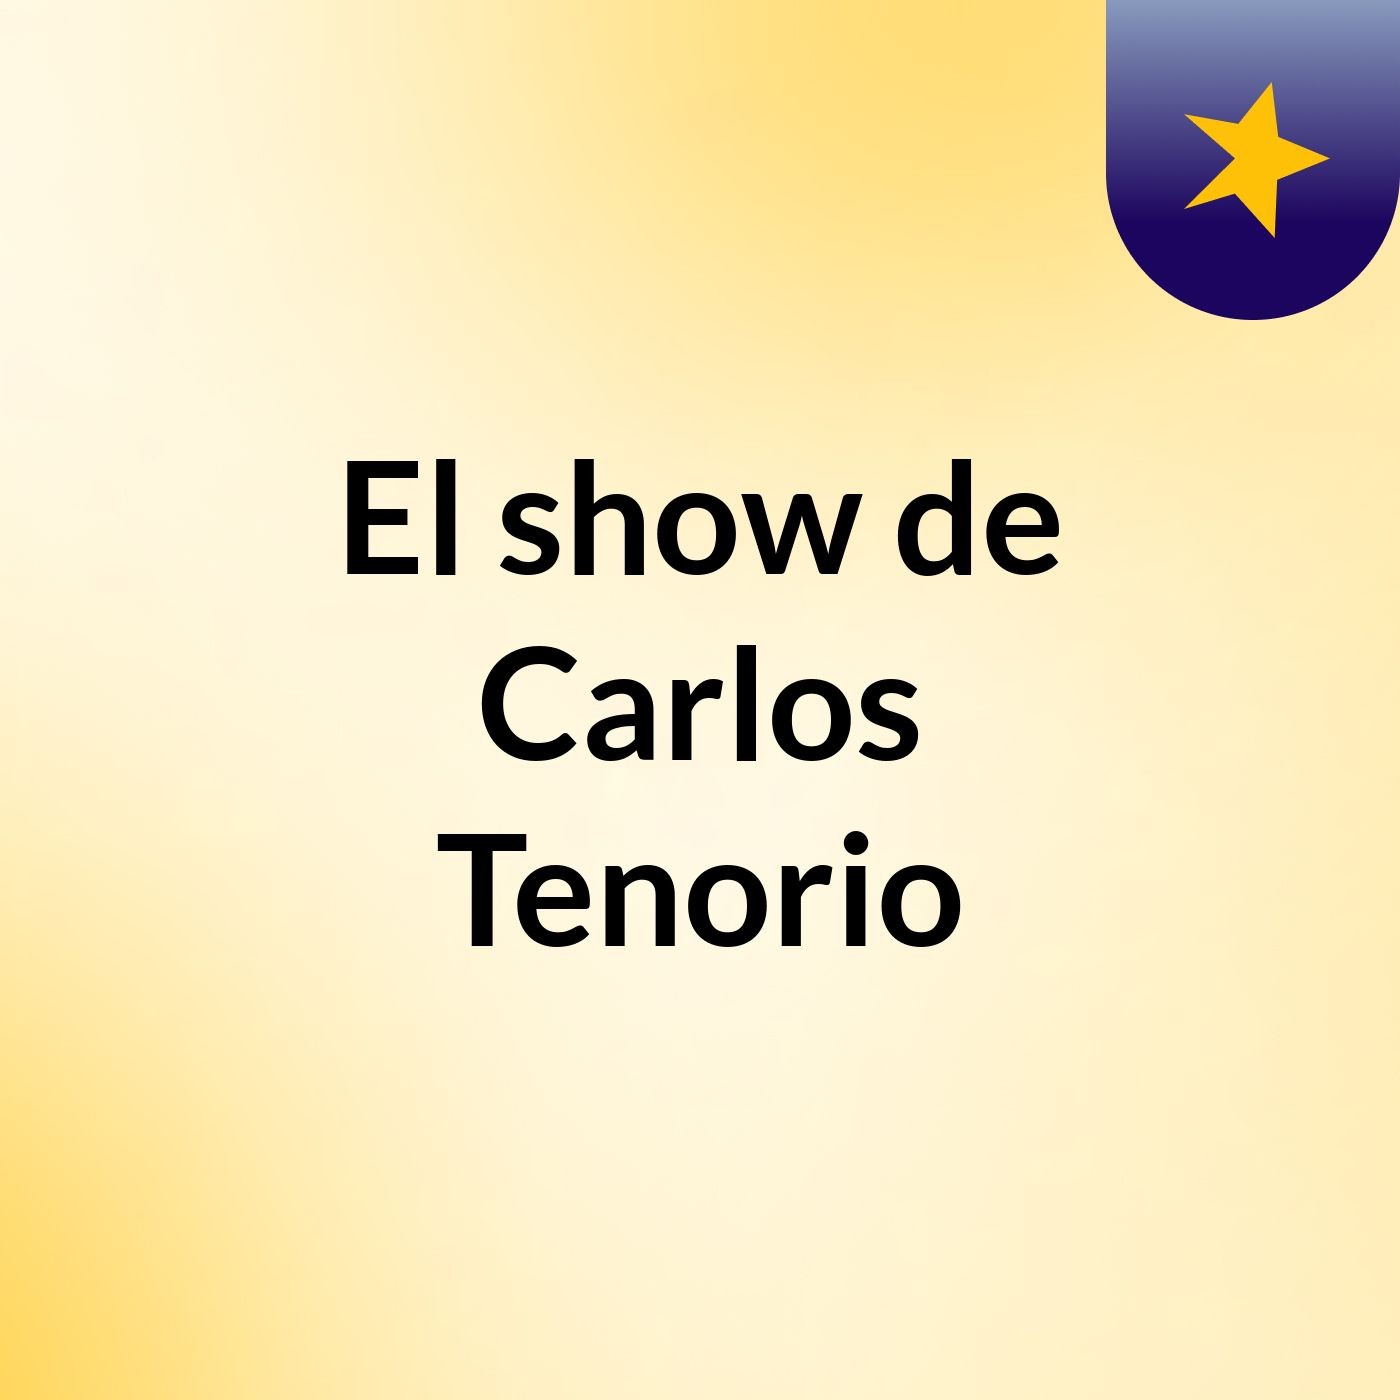 El show de Carlos Tenorio